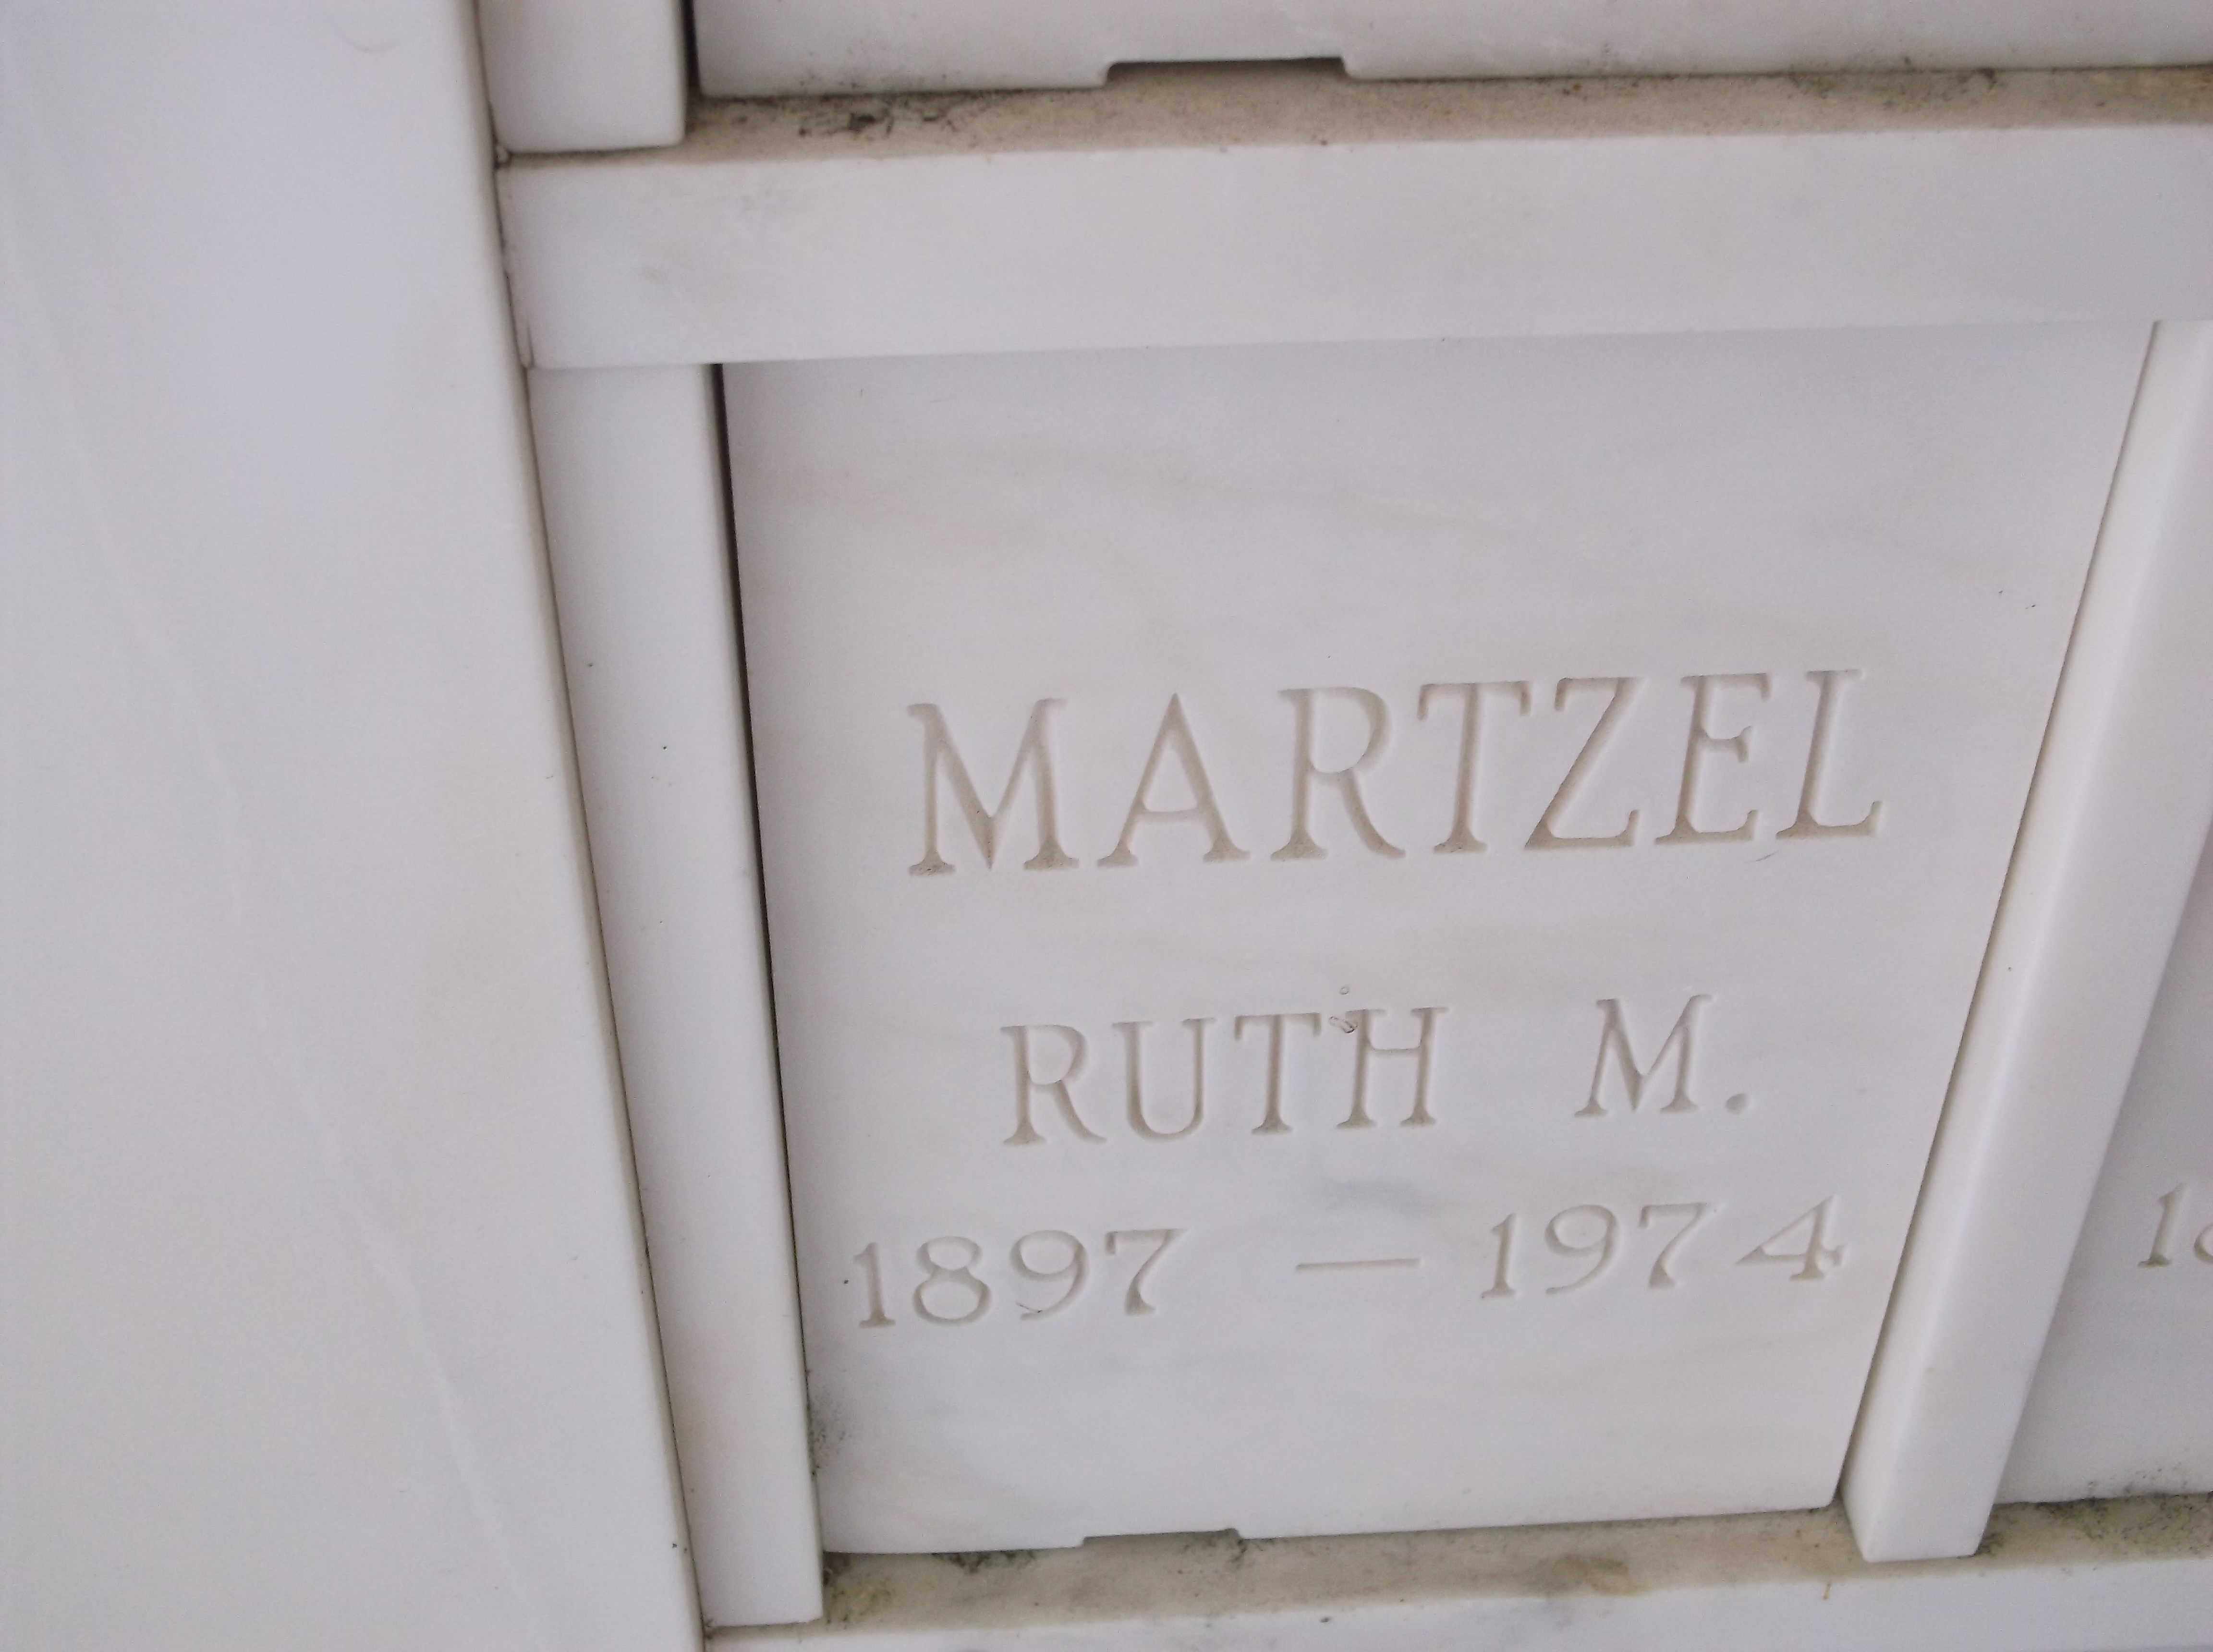 Ruth M Martzel